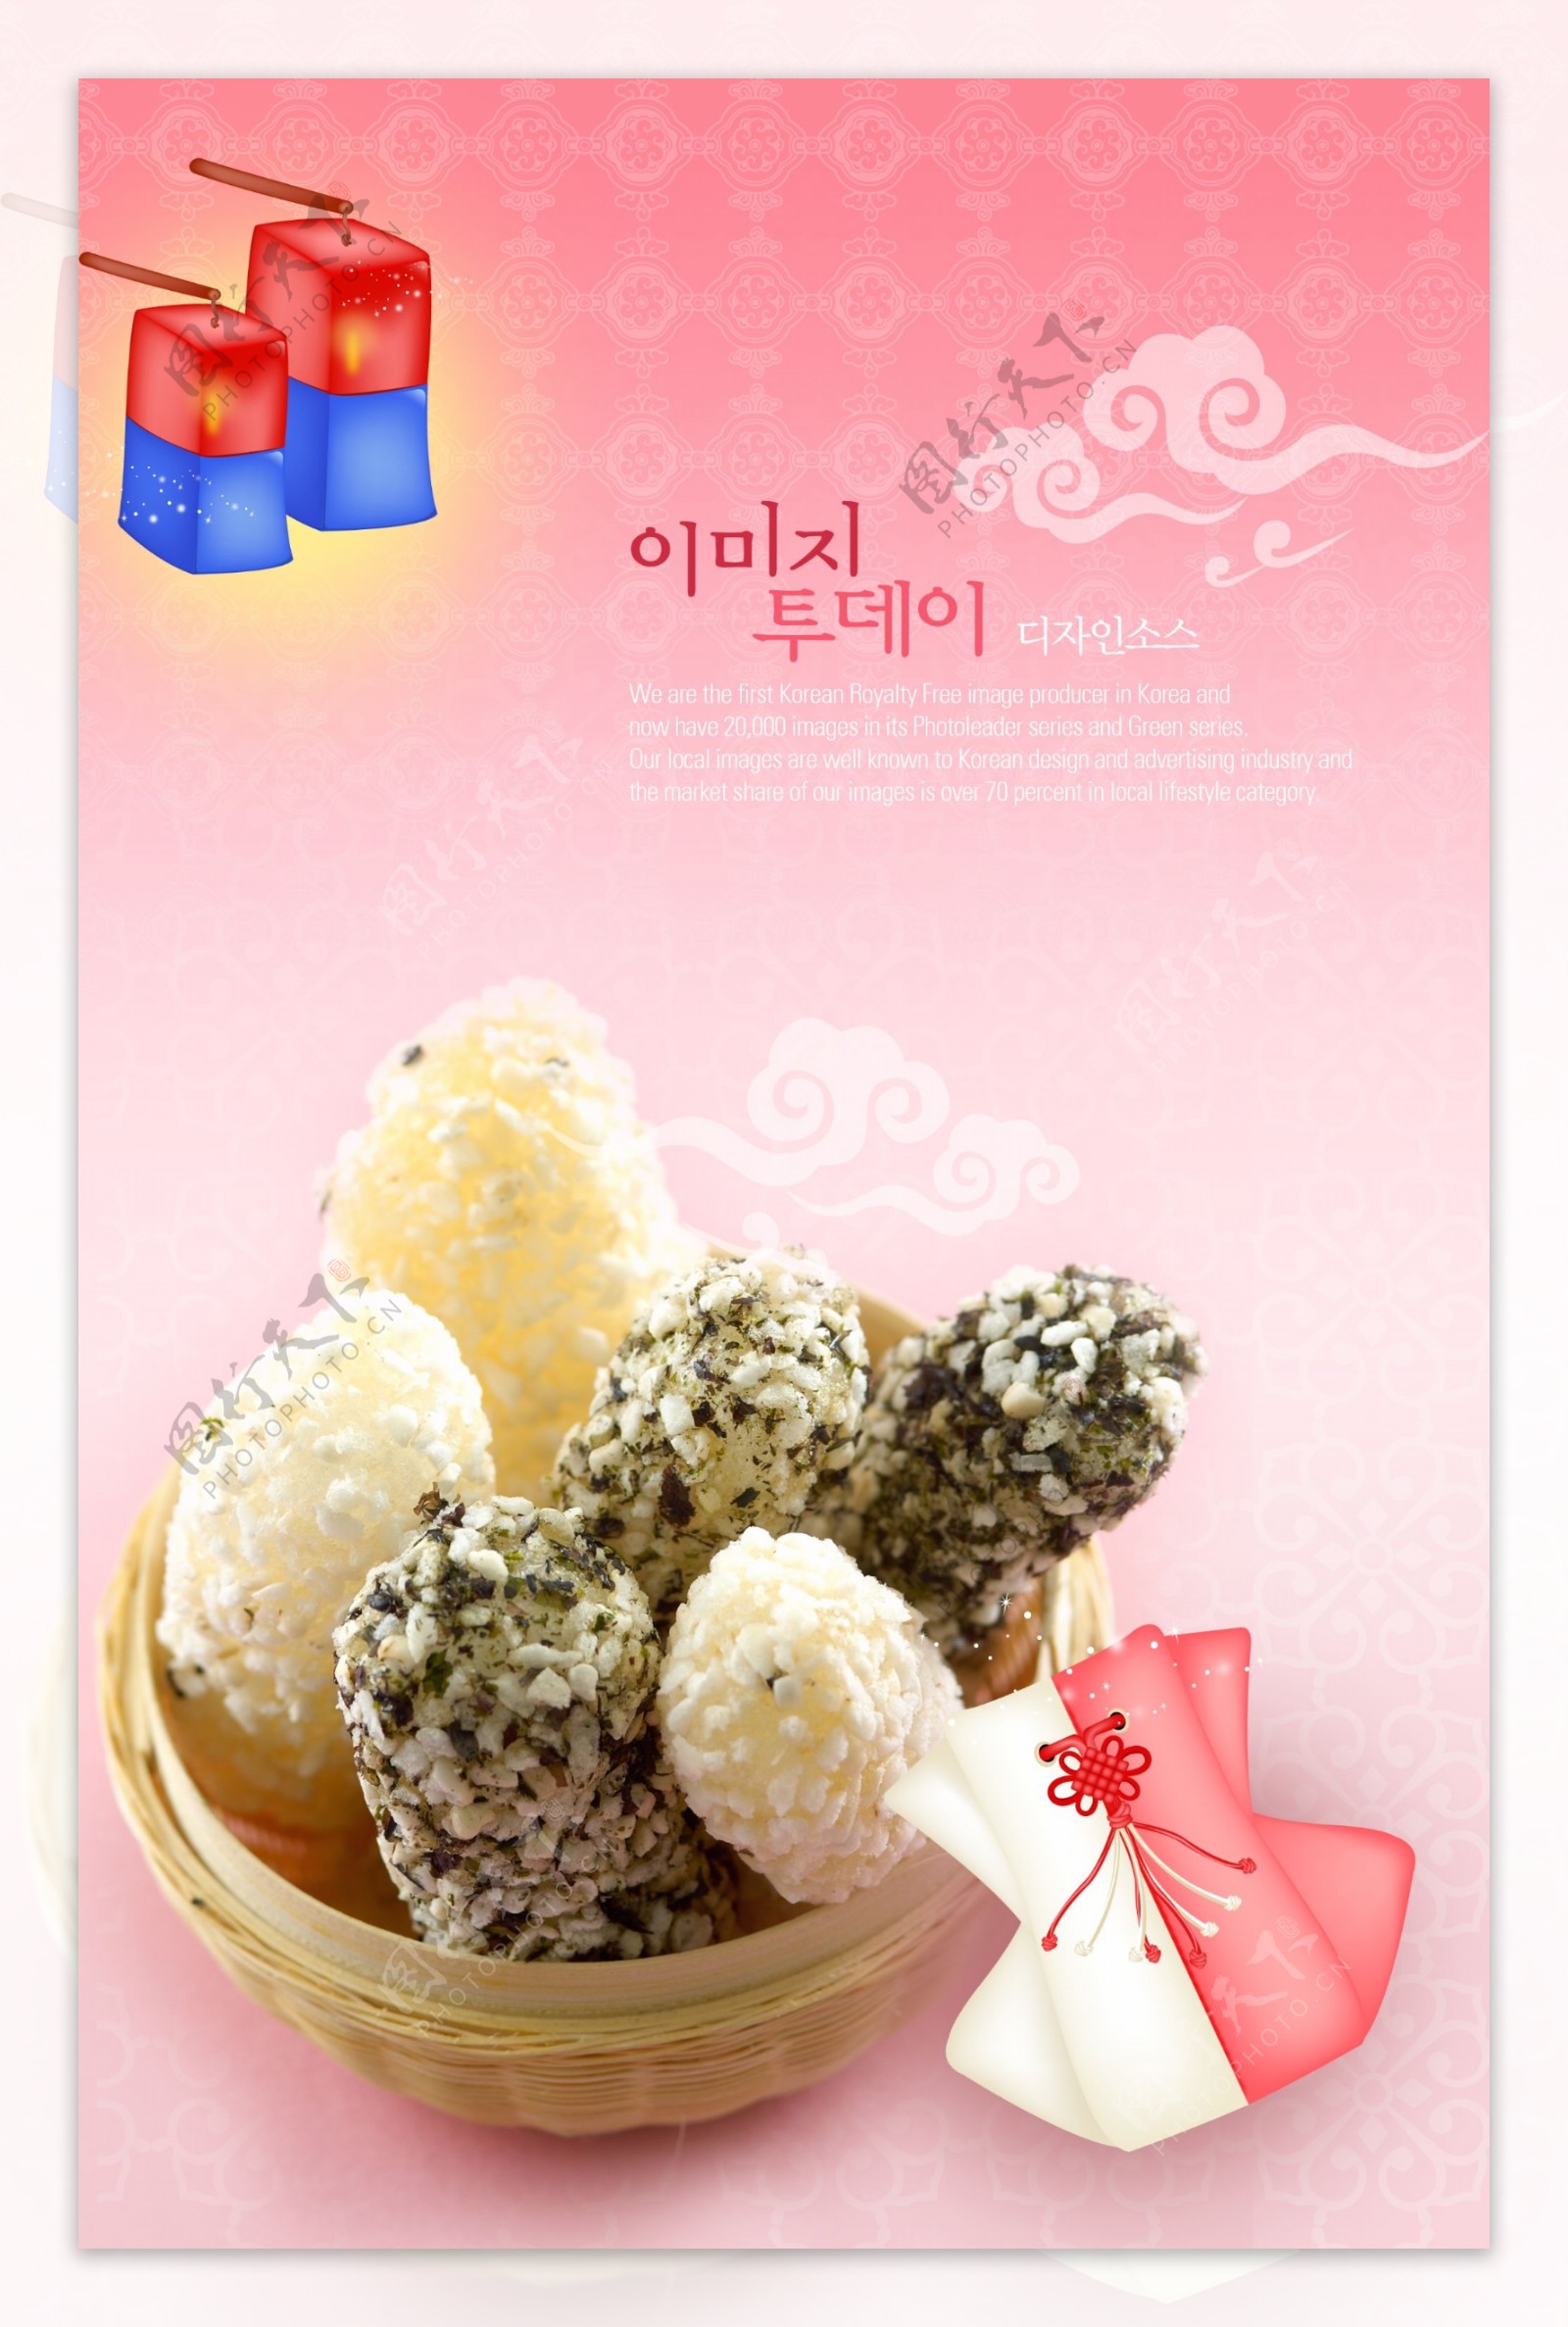 韩国美食粉红色背景广告图片